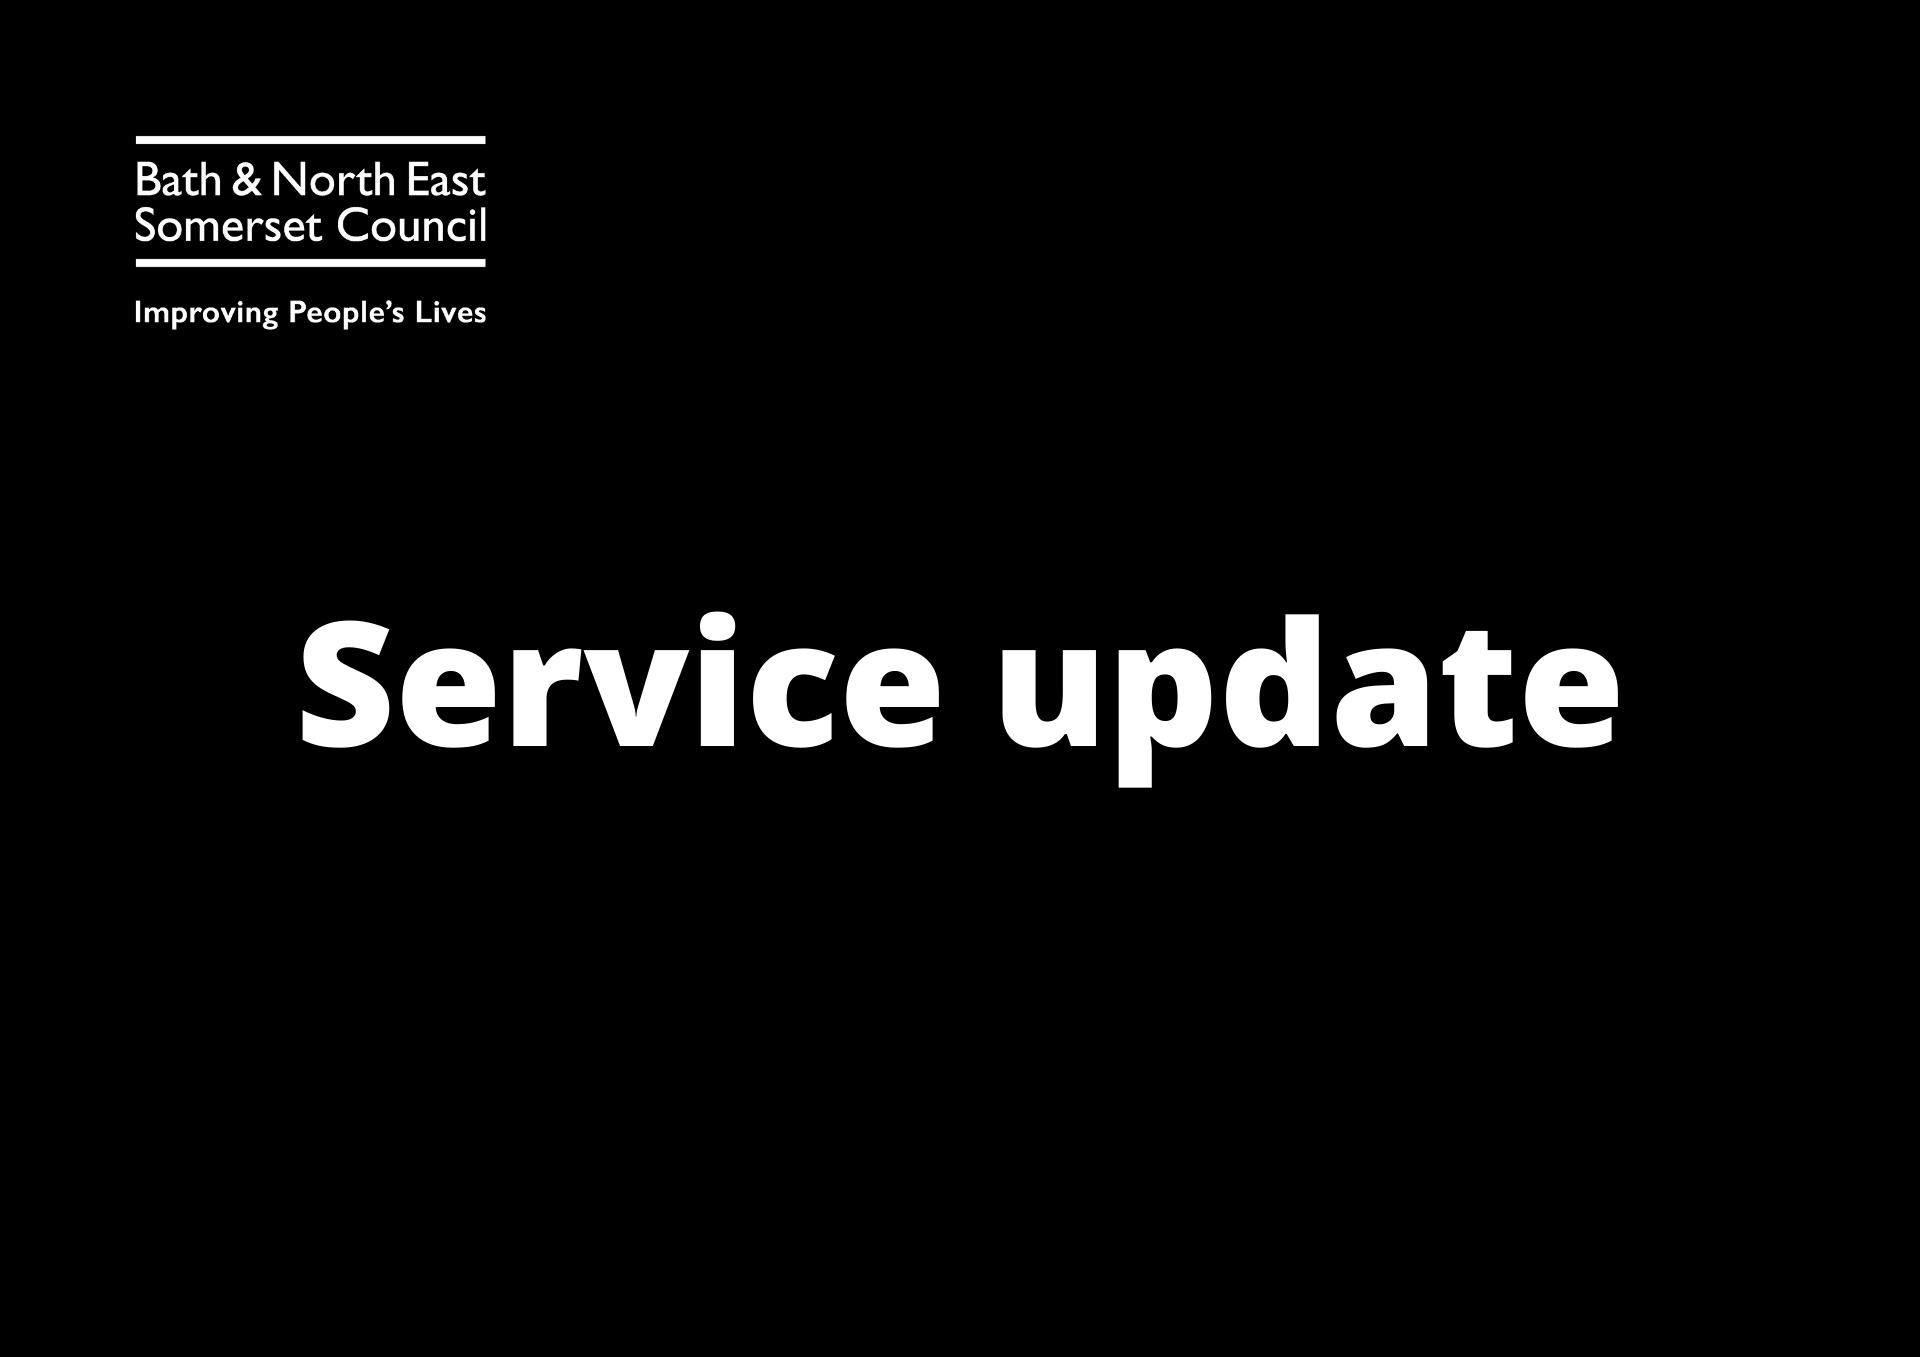 Service update